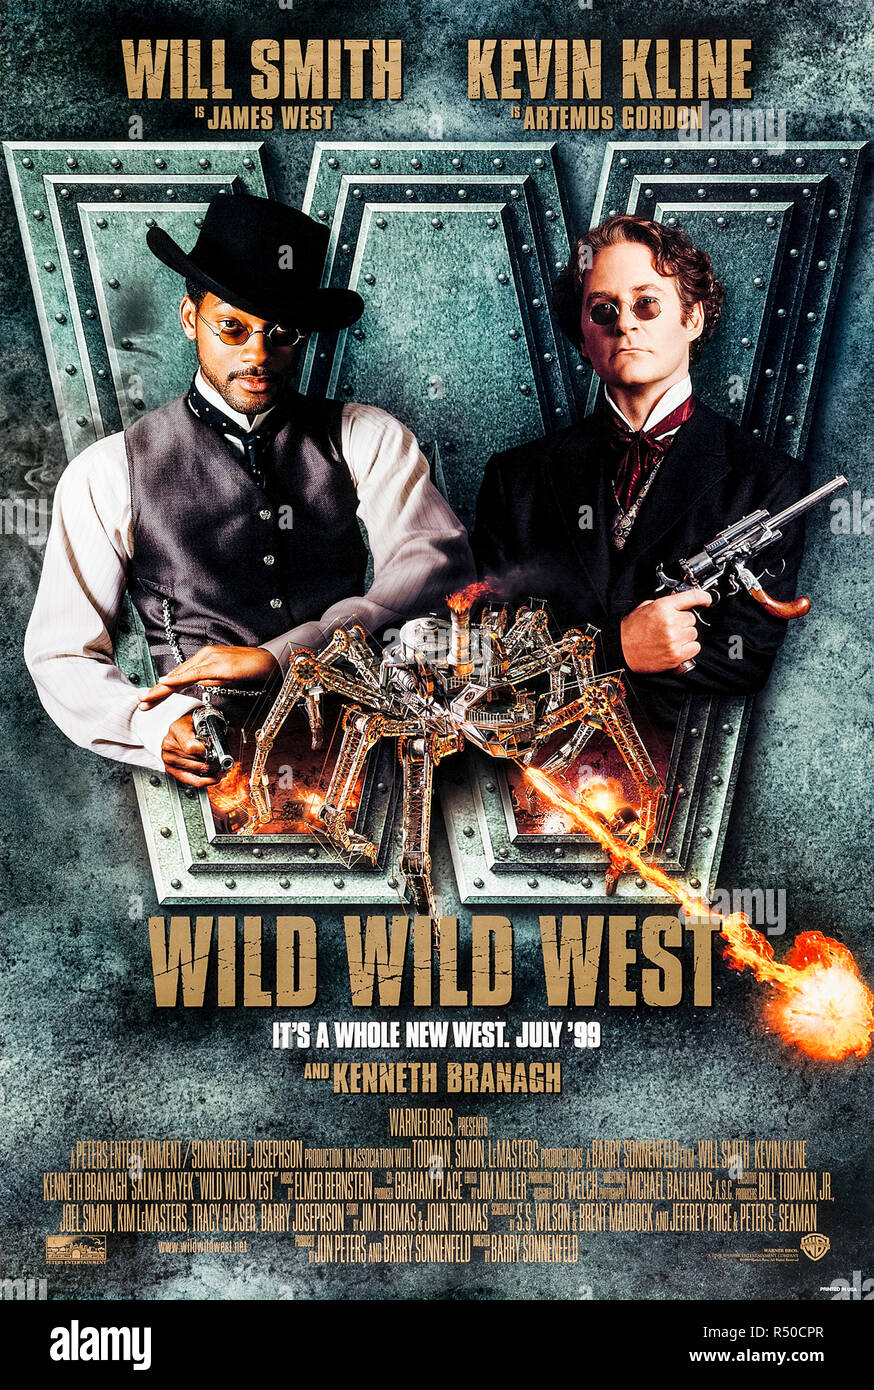 Wild Wild West (1999), dirigida por Barry Sonnenfeld y protagonizada por Will Smith, Kevin Kline, Kenneth Branagh y Salma Hayek. Dos pistoleros a sueldo ir después de un inventor renegado tratando de asesinar al presidente Ulysses S. Grant. Foto de stock